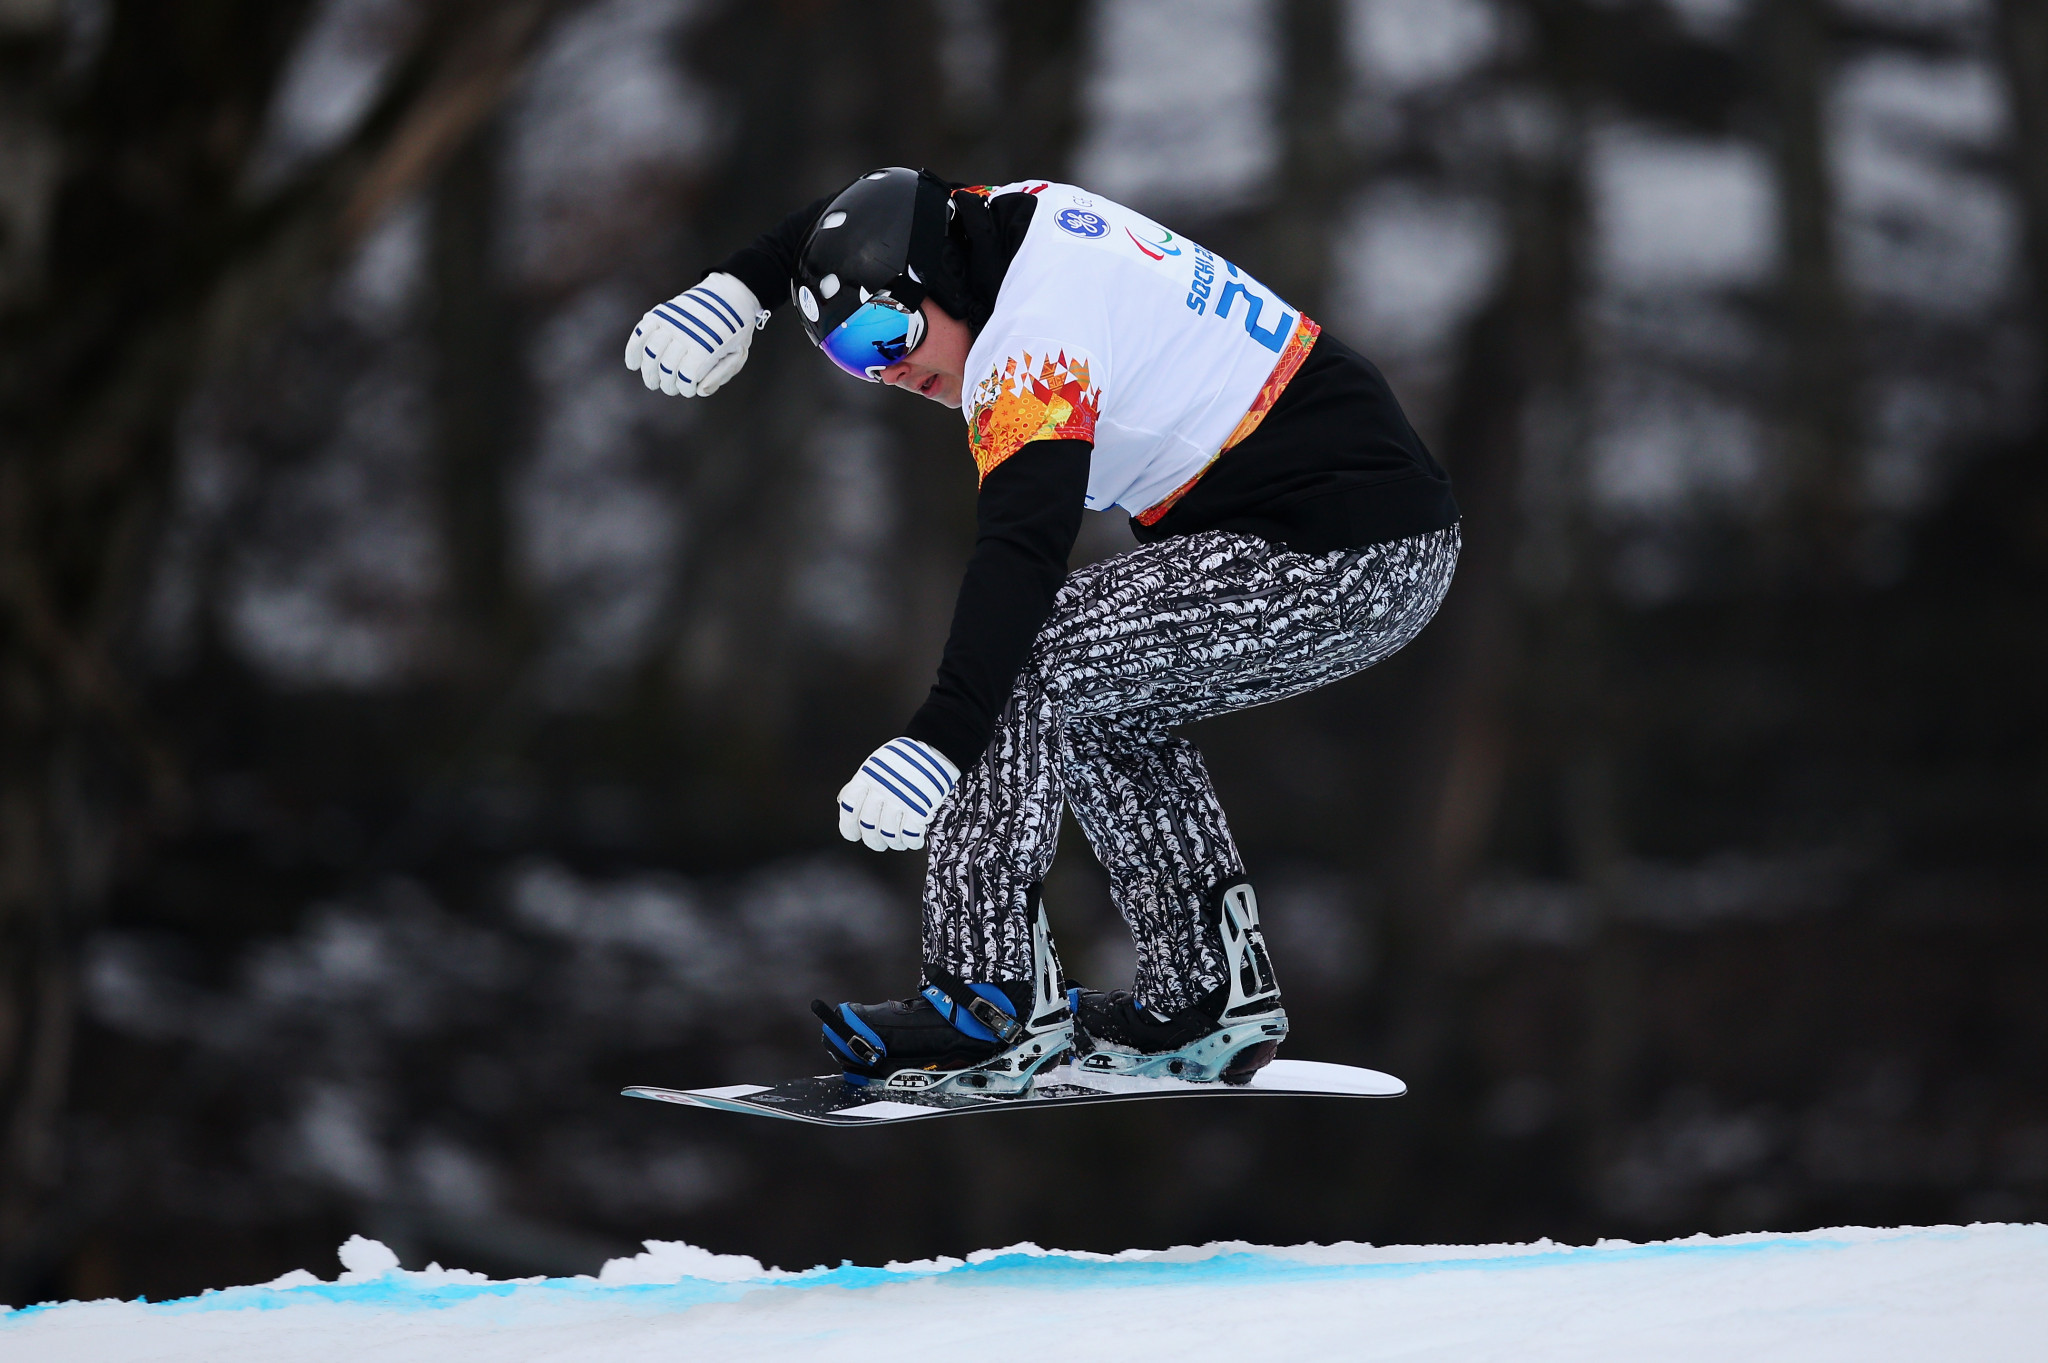 Suur-Hamari edges Shea to take victory at Para Snowboard World Cup